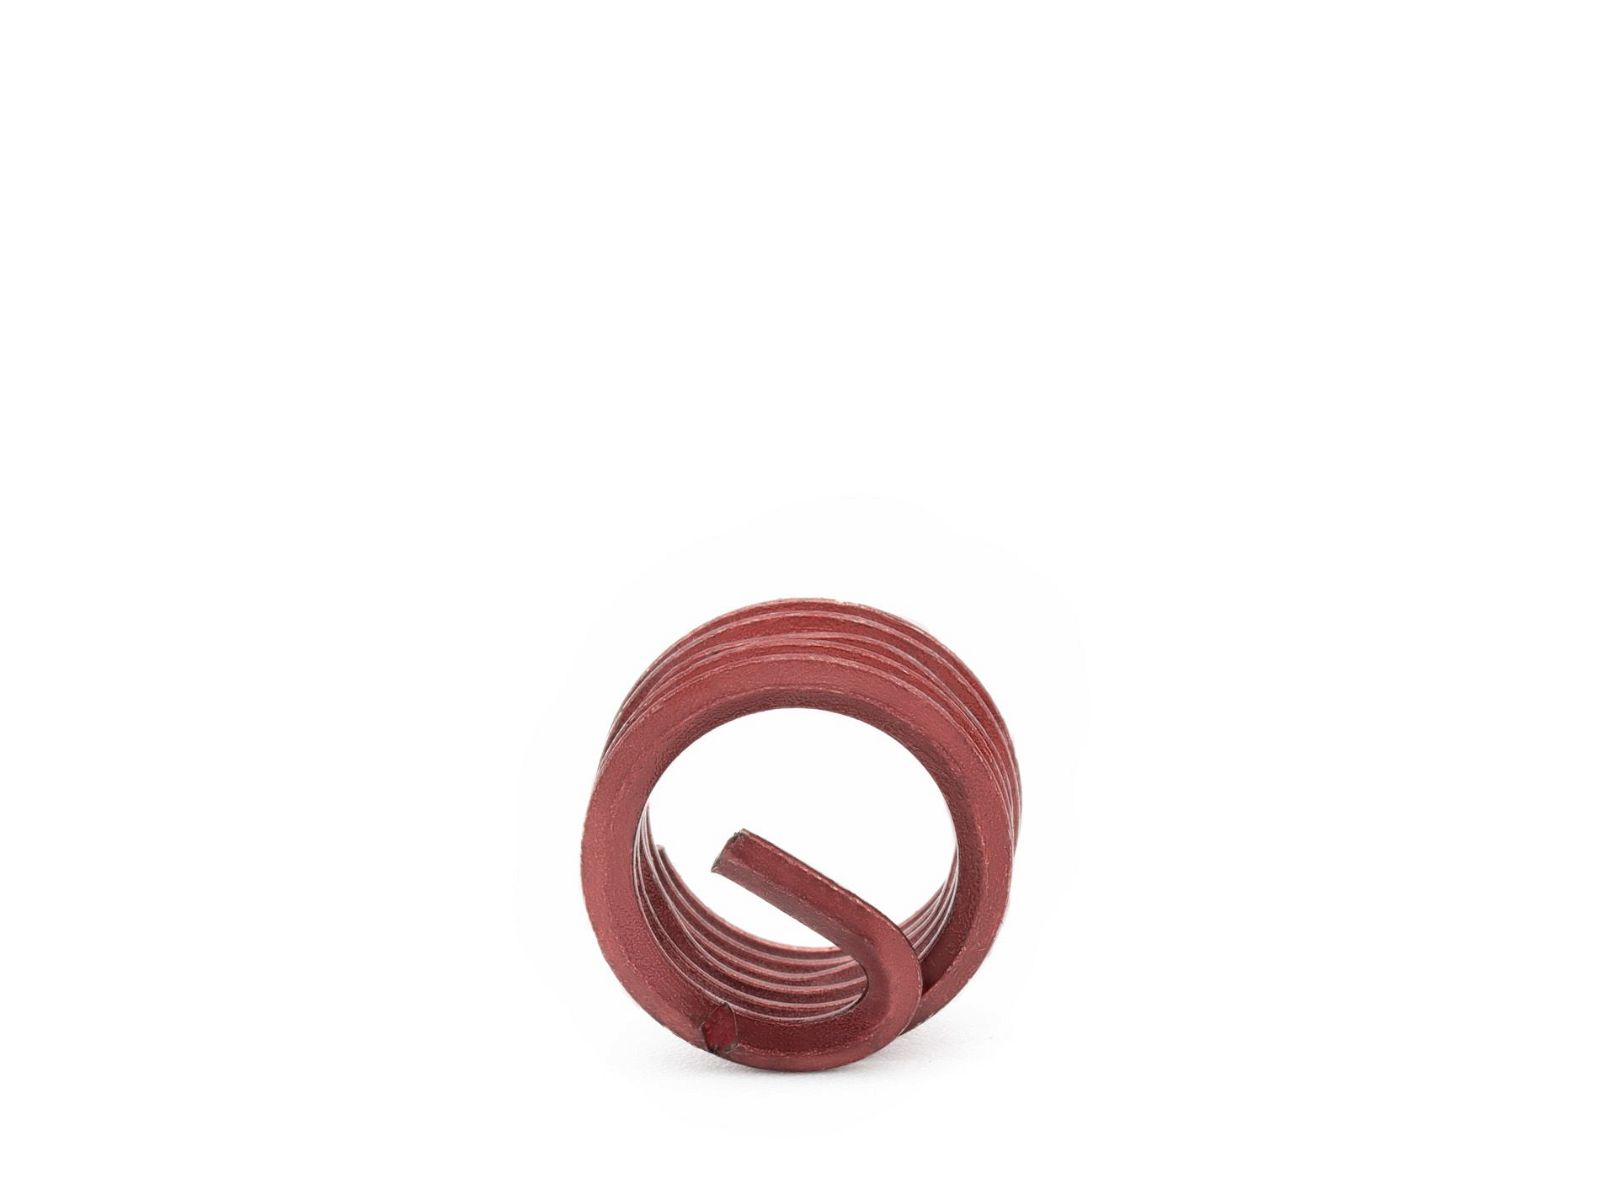 BaerCoil Wire Thread Inserts BA 4 - 1.0 D (3.6 mm) - screw grip (screw locking) - 100 pcs.